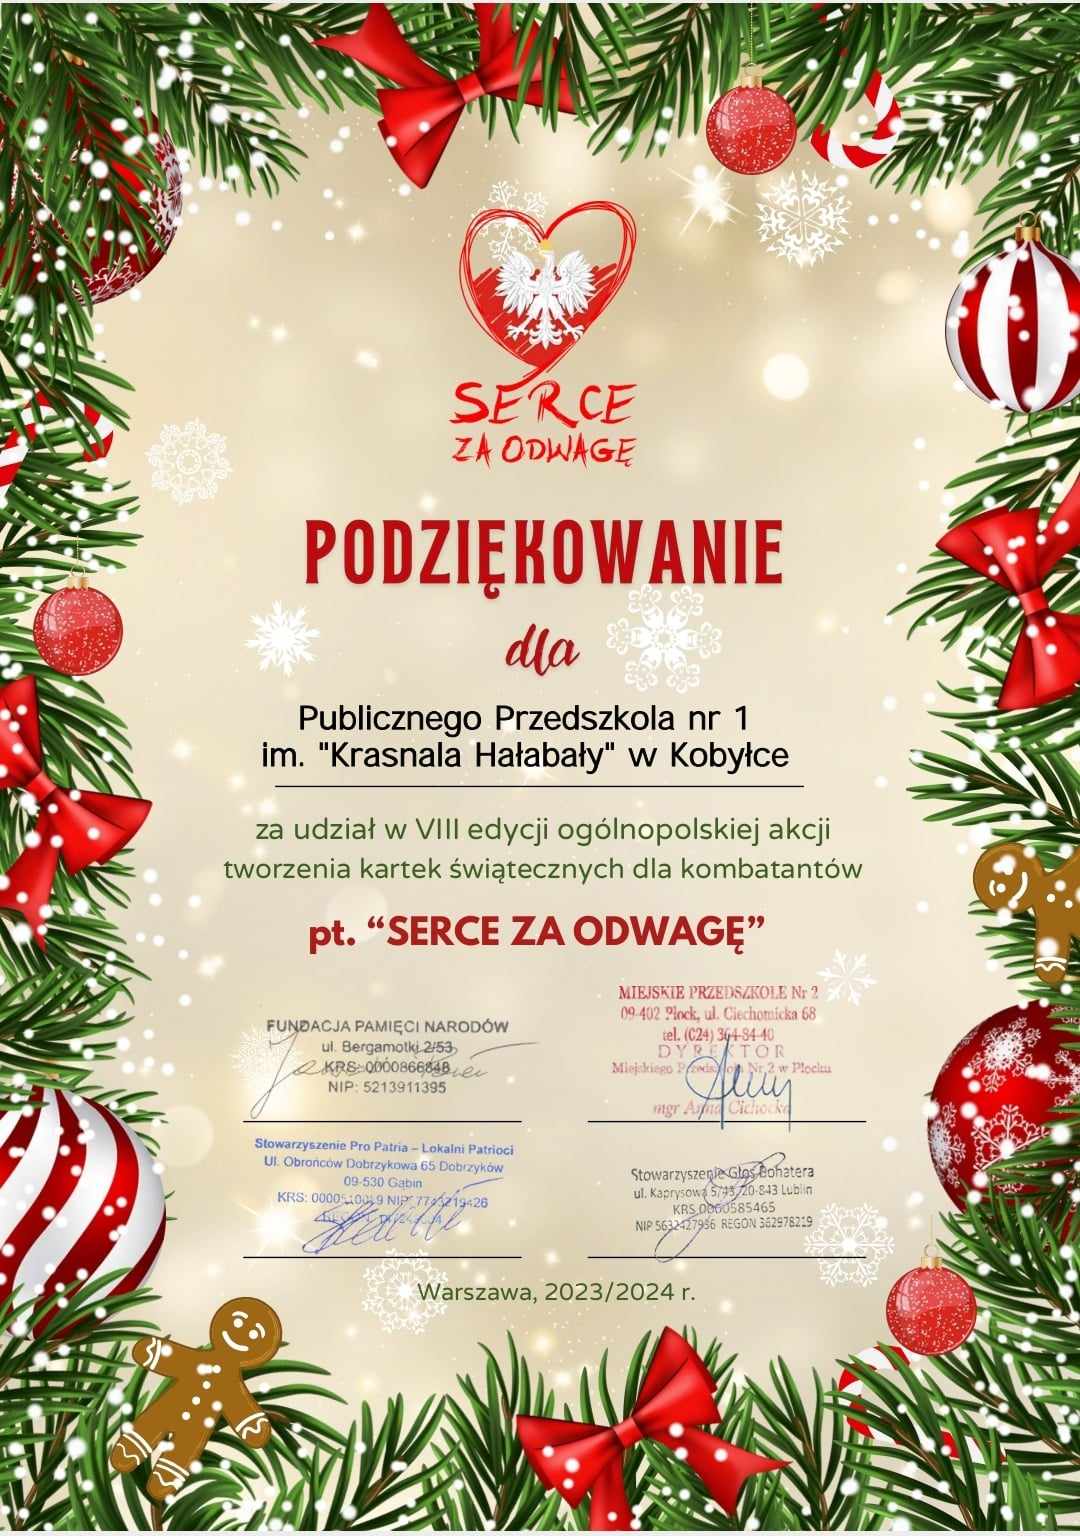 Podziękowanie w ogólnopolskiej akcji „Serce dla kombatantów”